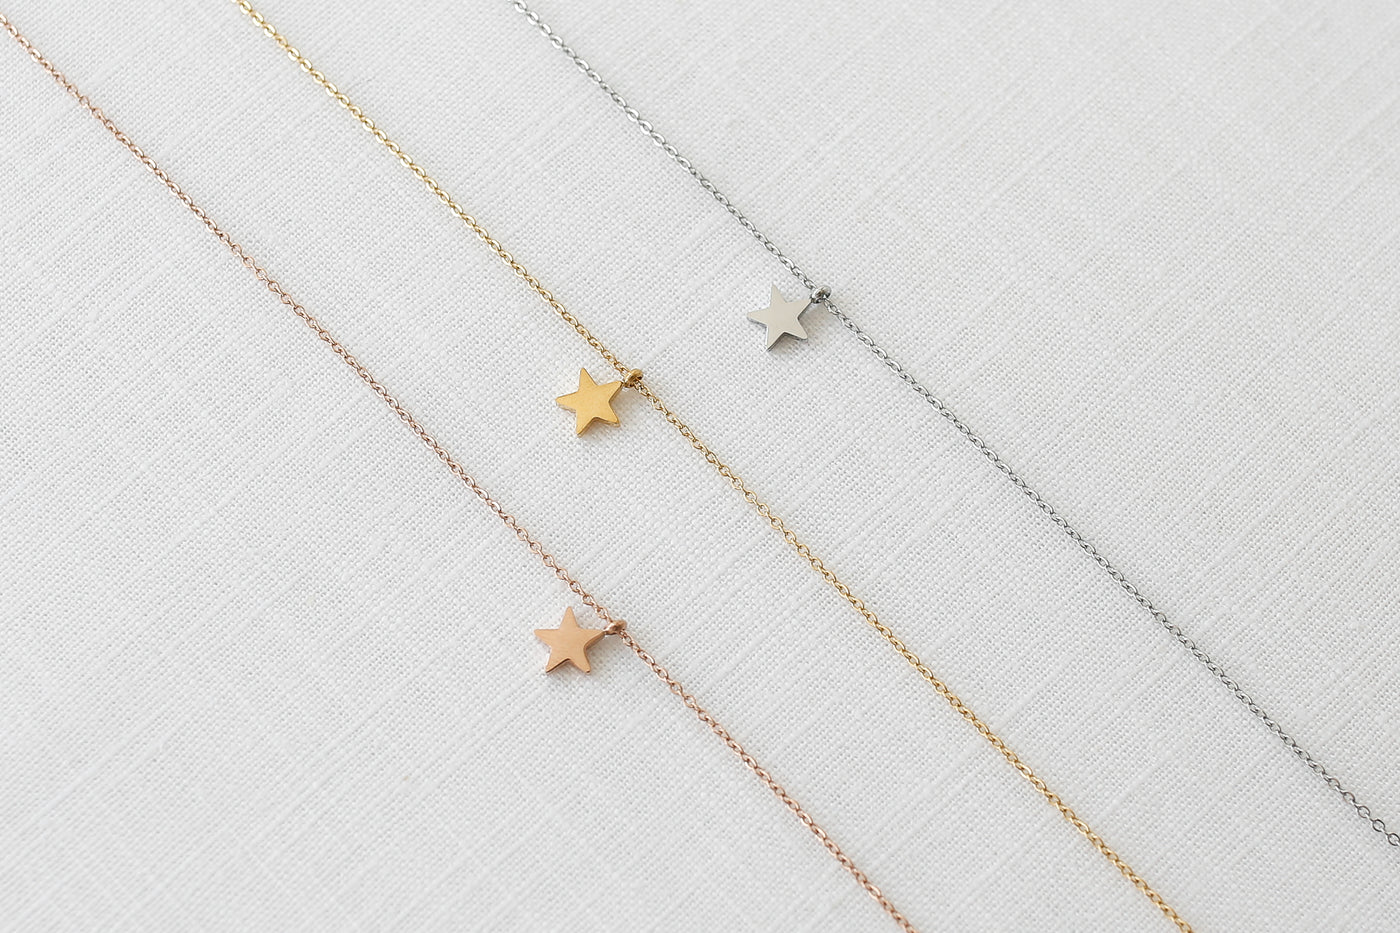 Drei Ketten mit Stern Anhänger in Silber, Gold und Rosegold ausgebreitet auf Leinen Stoff